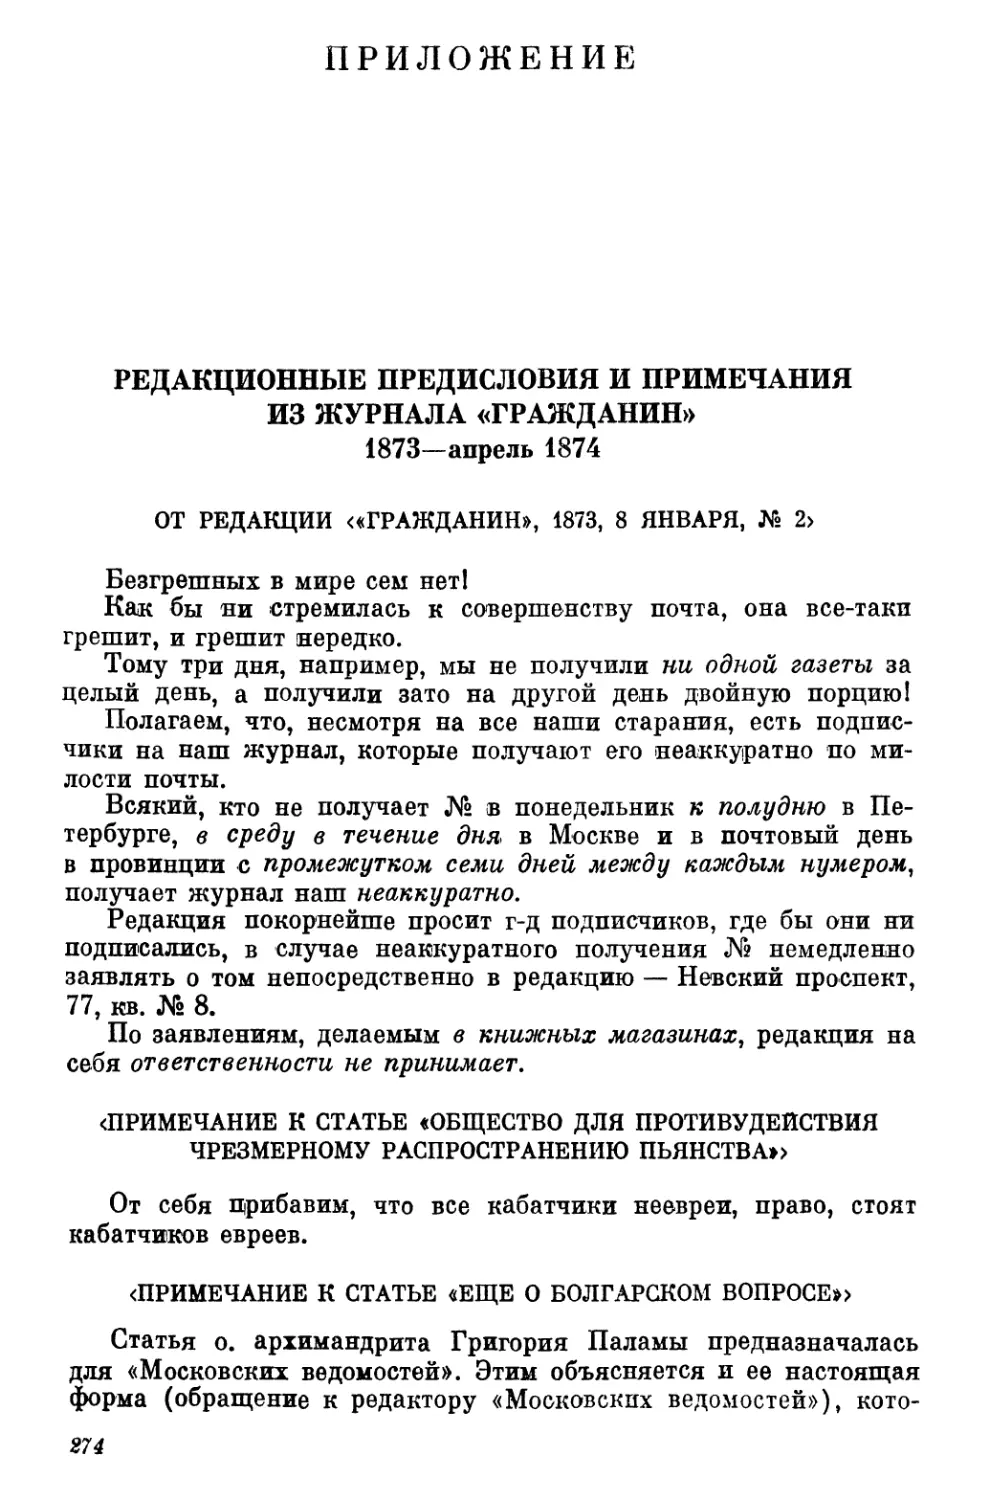 Приложение
От редакции <«Гражданин», 1873, 8 января. №2>
<Примечание к статье «Общество для противудействия чрезмерному распространению пьянства»>
<Примечание к статье «Еще о болгарском вопросе»>